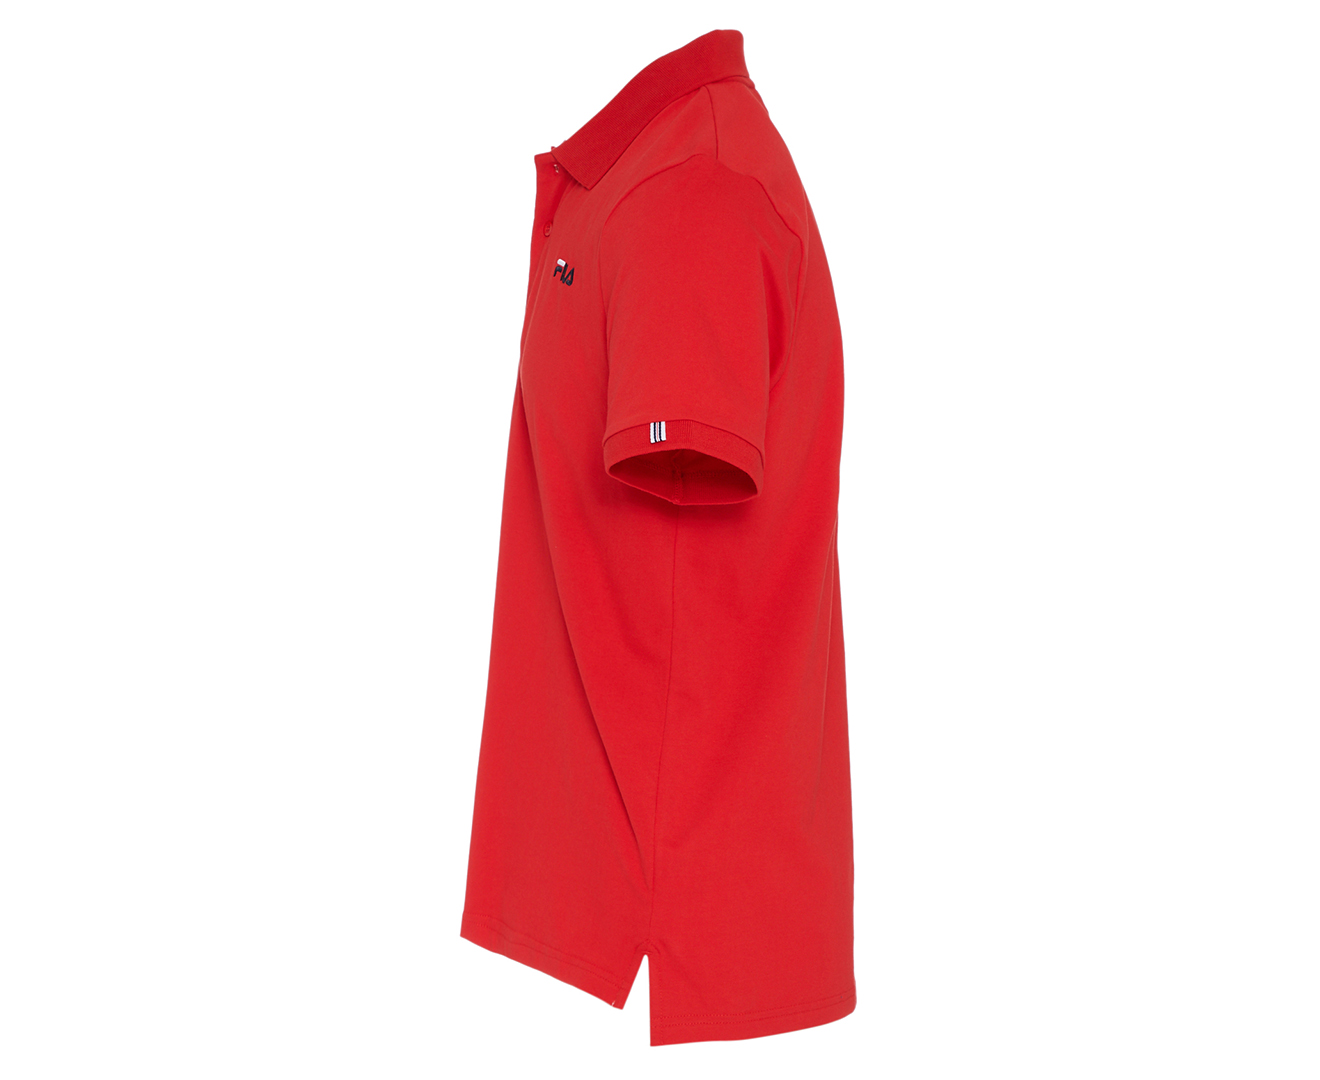 Fila Men's Veneto Polo Shirt - Red | Catch.com.au